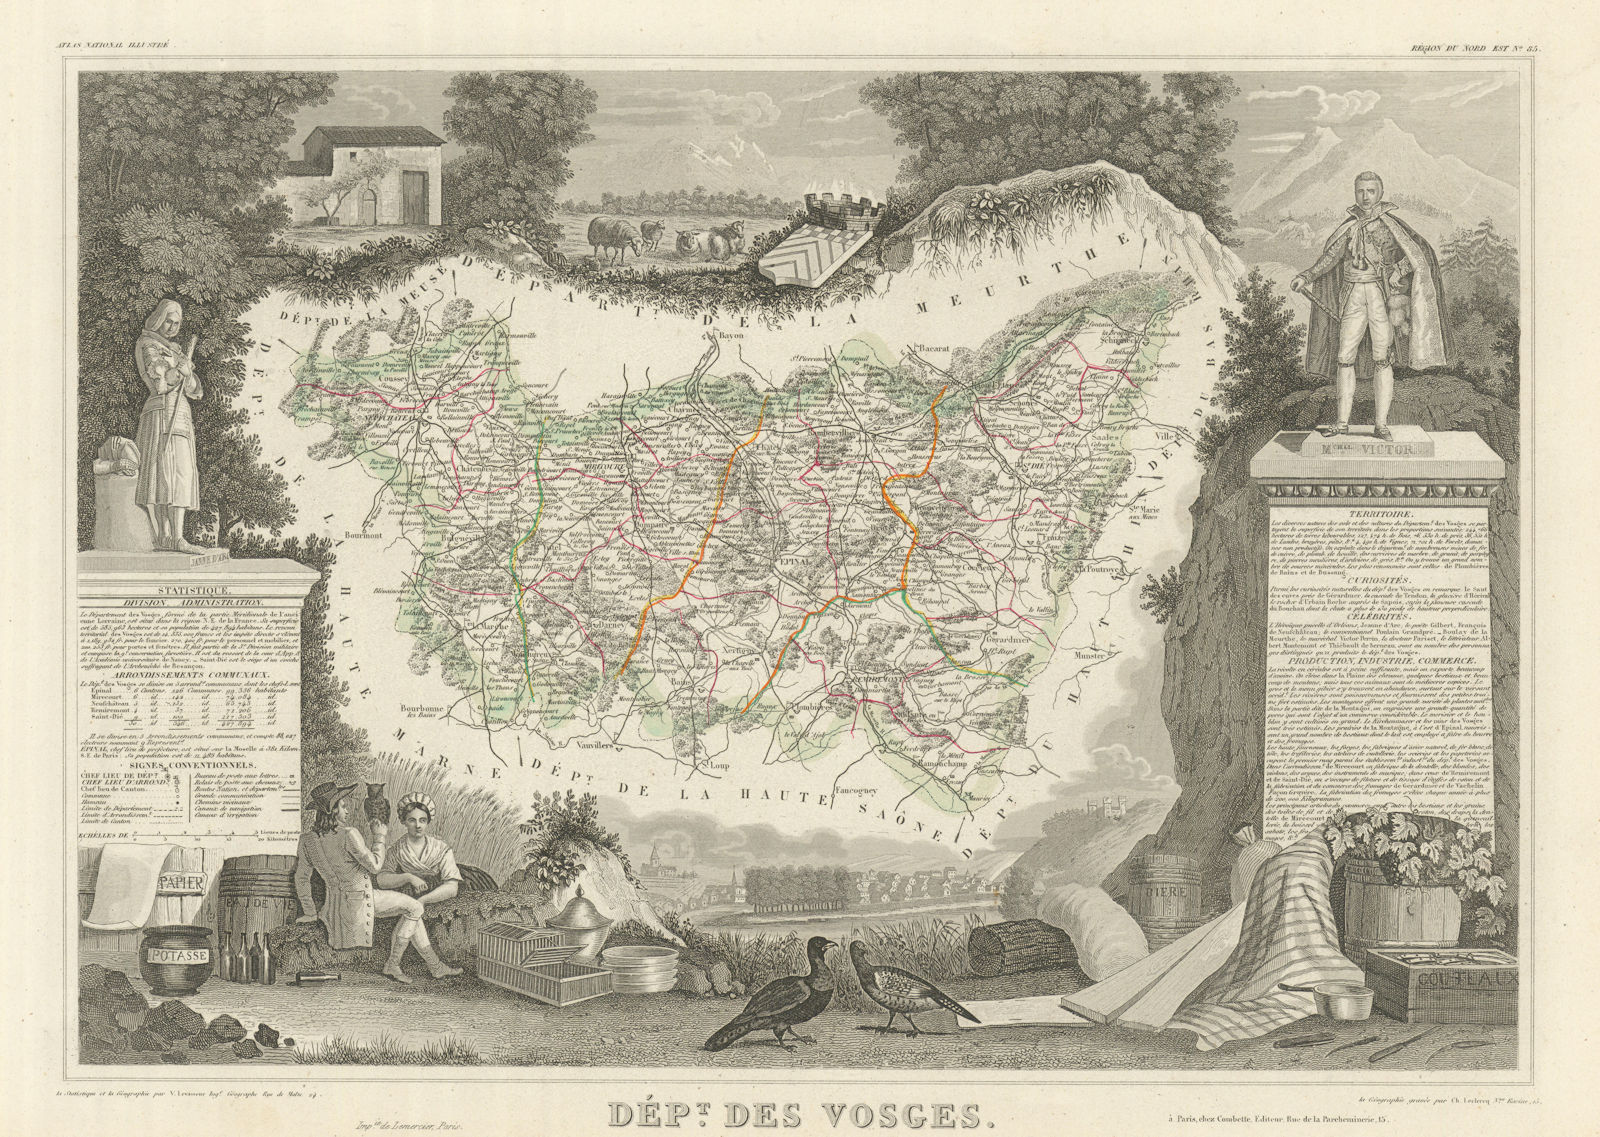 Associate Product Département des VOSGES. Decorative antique map/carte by Victor LEVASSEUR 1856